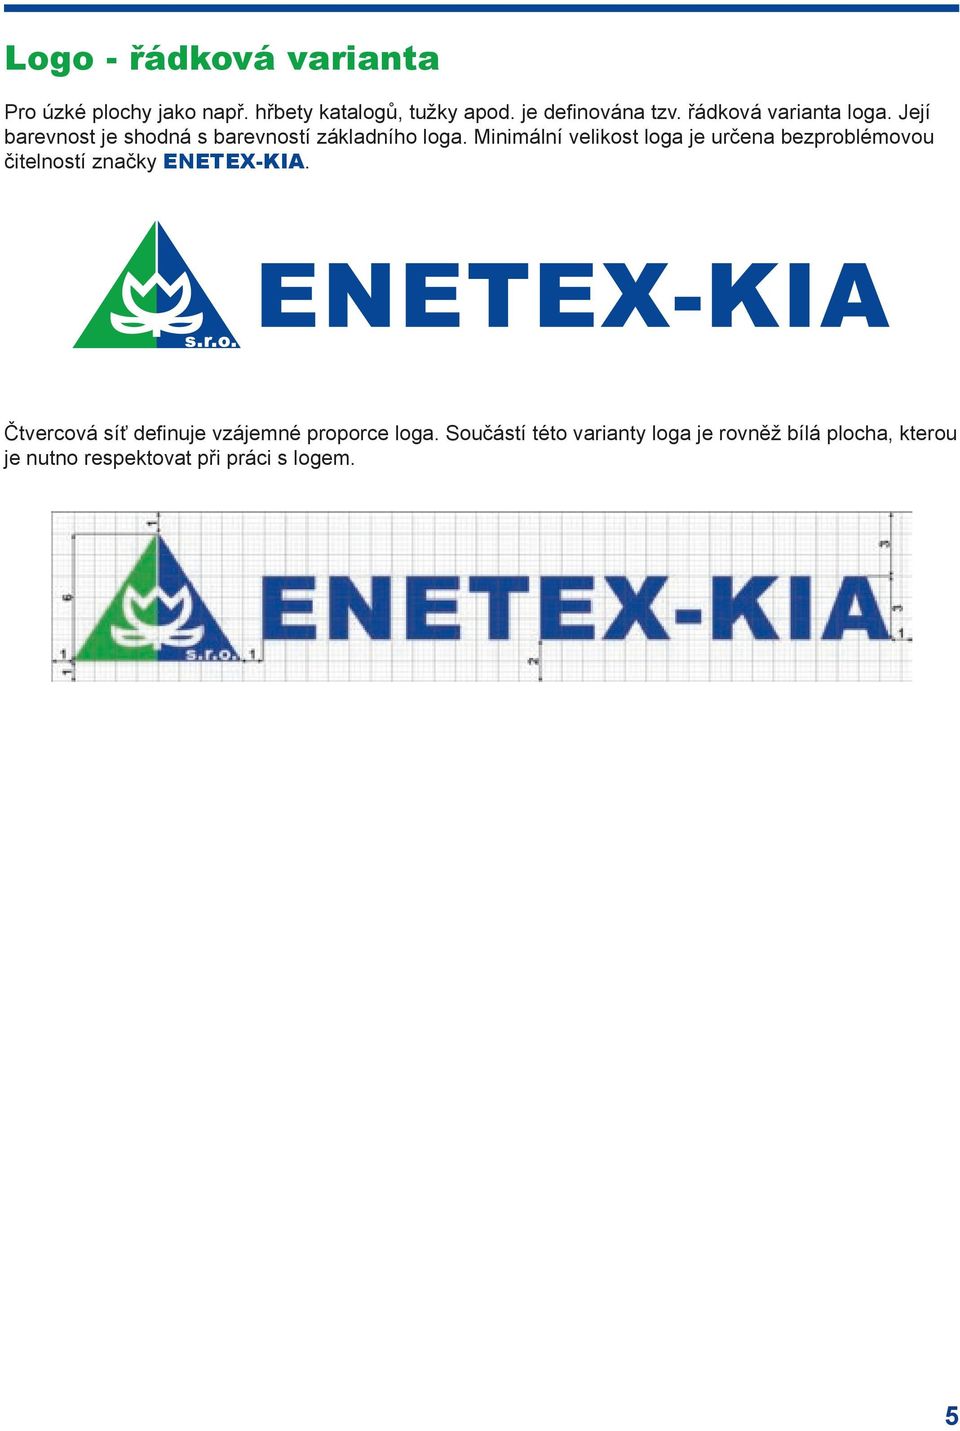 Minimální velikost loga je určena bezproblémovou čitelností značky ENETEX-KIA.